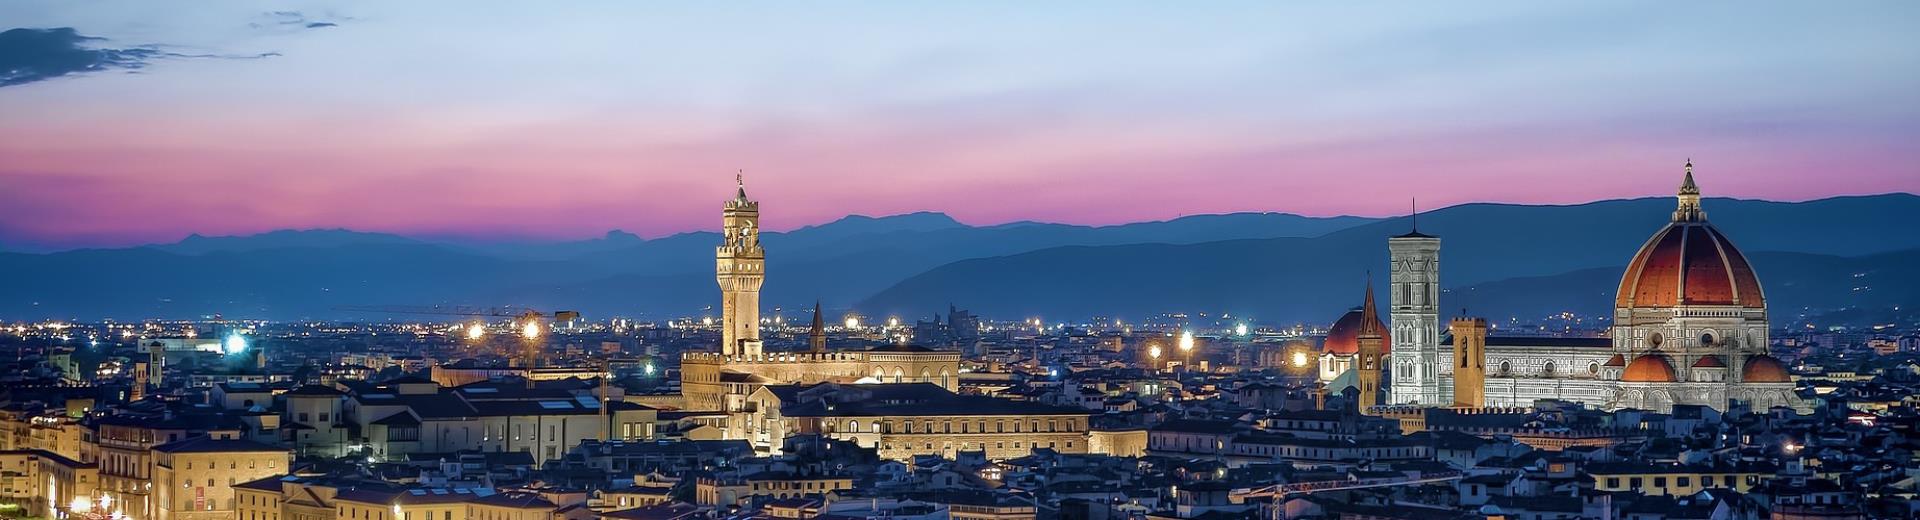 Se cerchi un hotel a Firenze in posizione comoda per muoverti a piedi alla scoperta delle bellezze della città, scegli Sure Hotel Collection De La Pace! I principali punti di interesse di Firenze sono a pochi minuti di distanza!